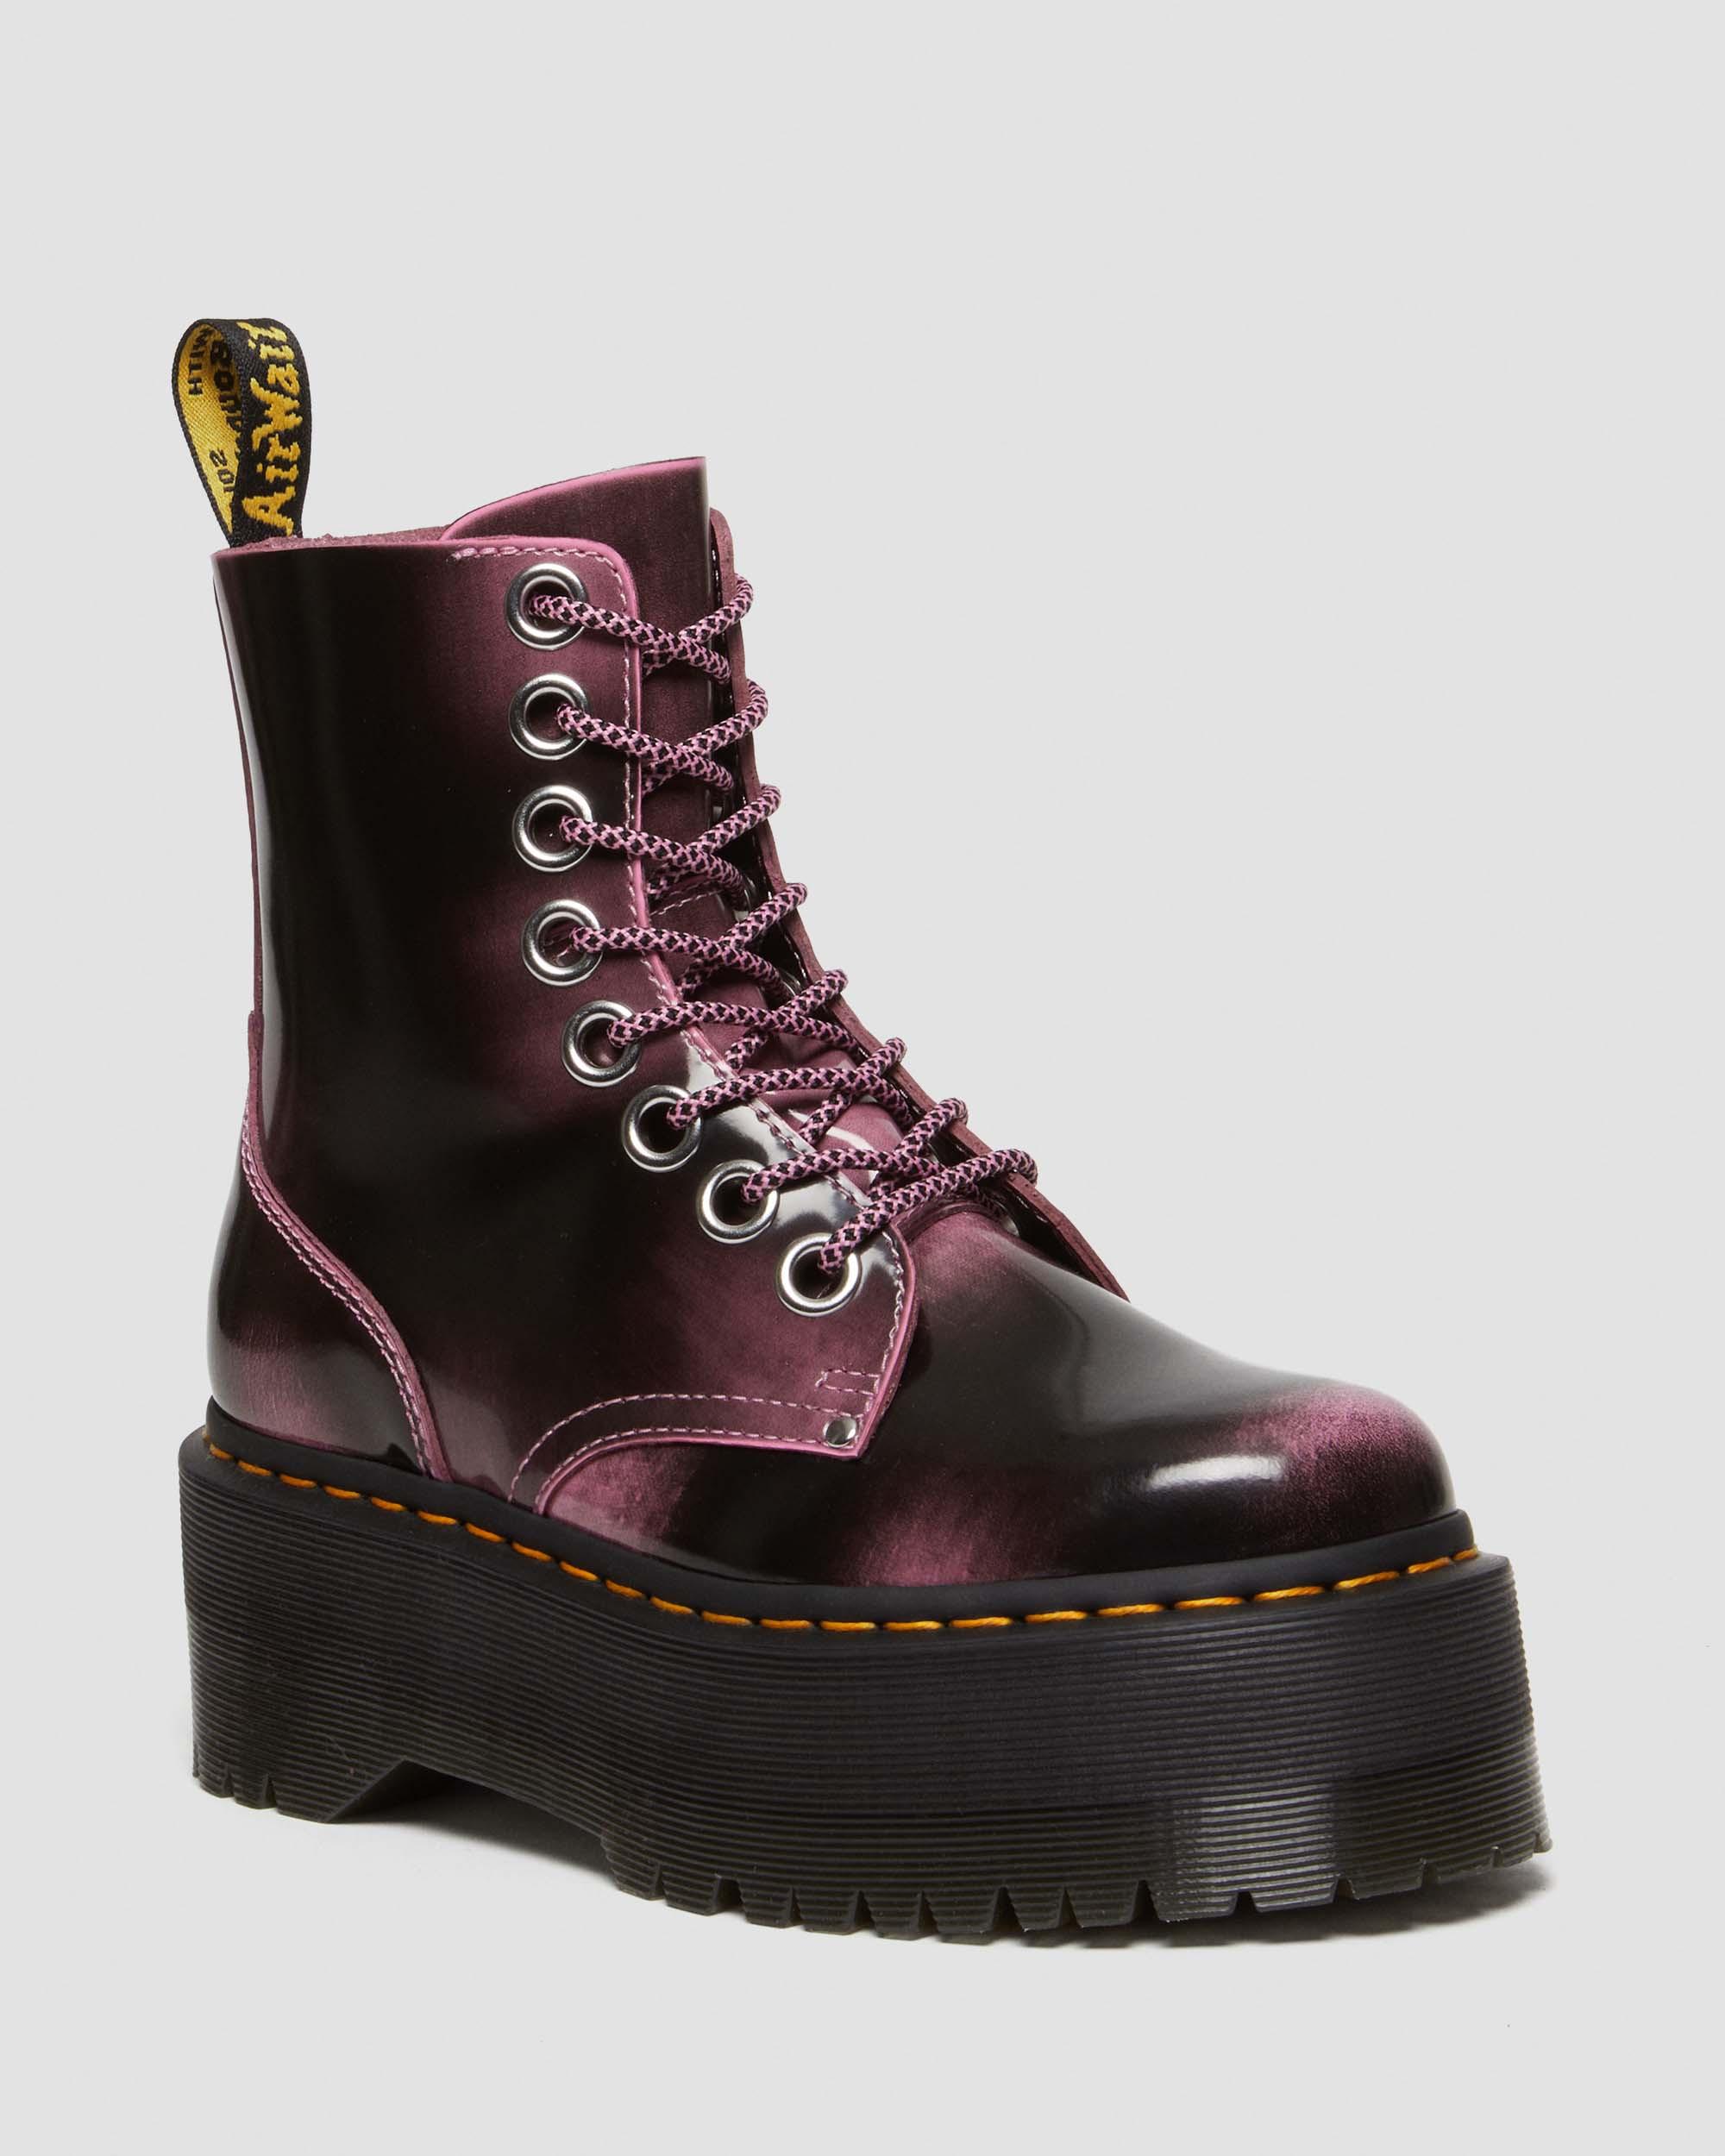 Jadon Boot Smooth Leather Platforms in Black | Dr. Martens